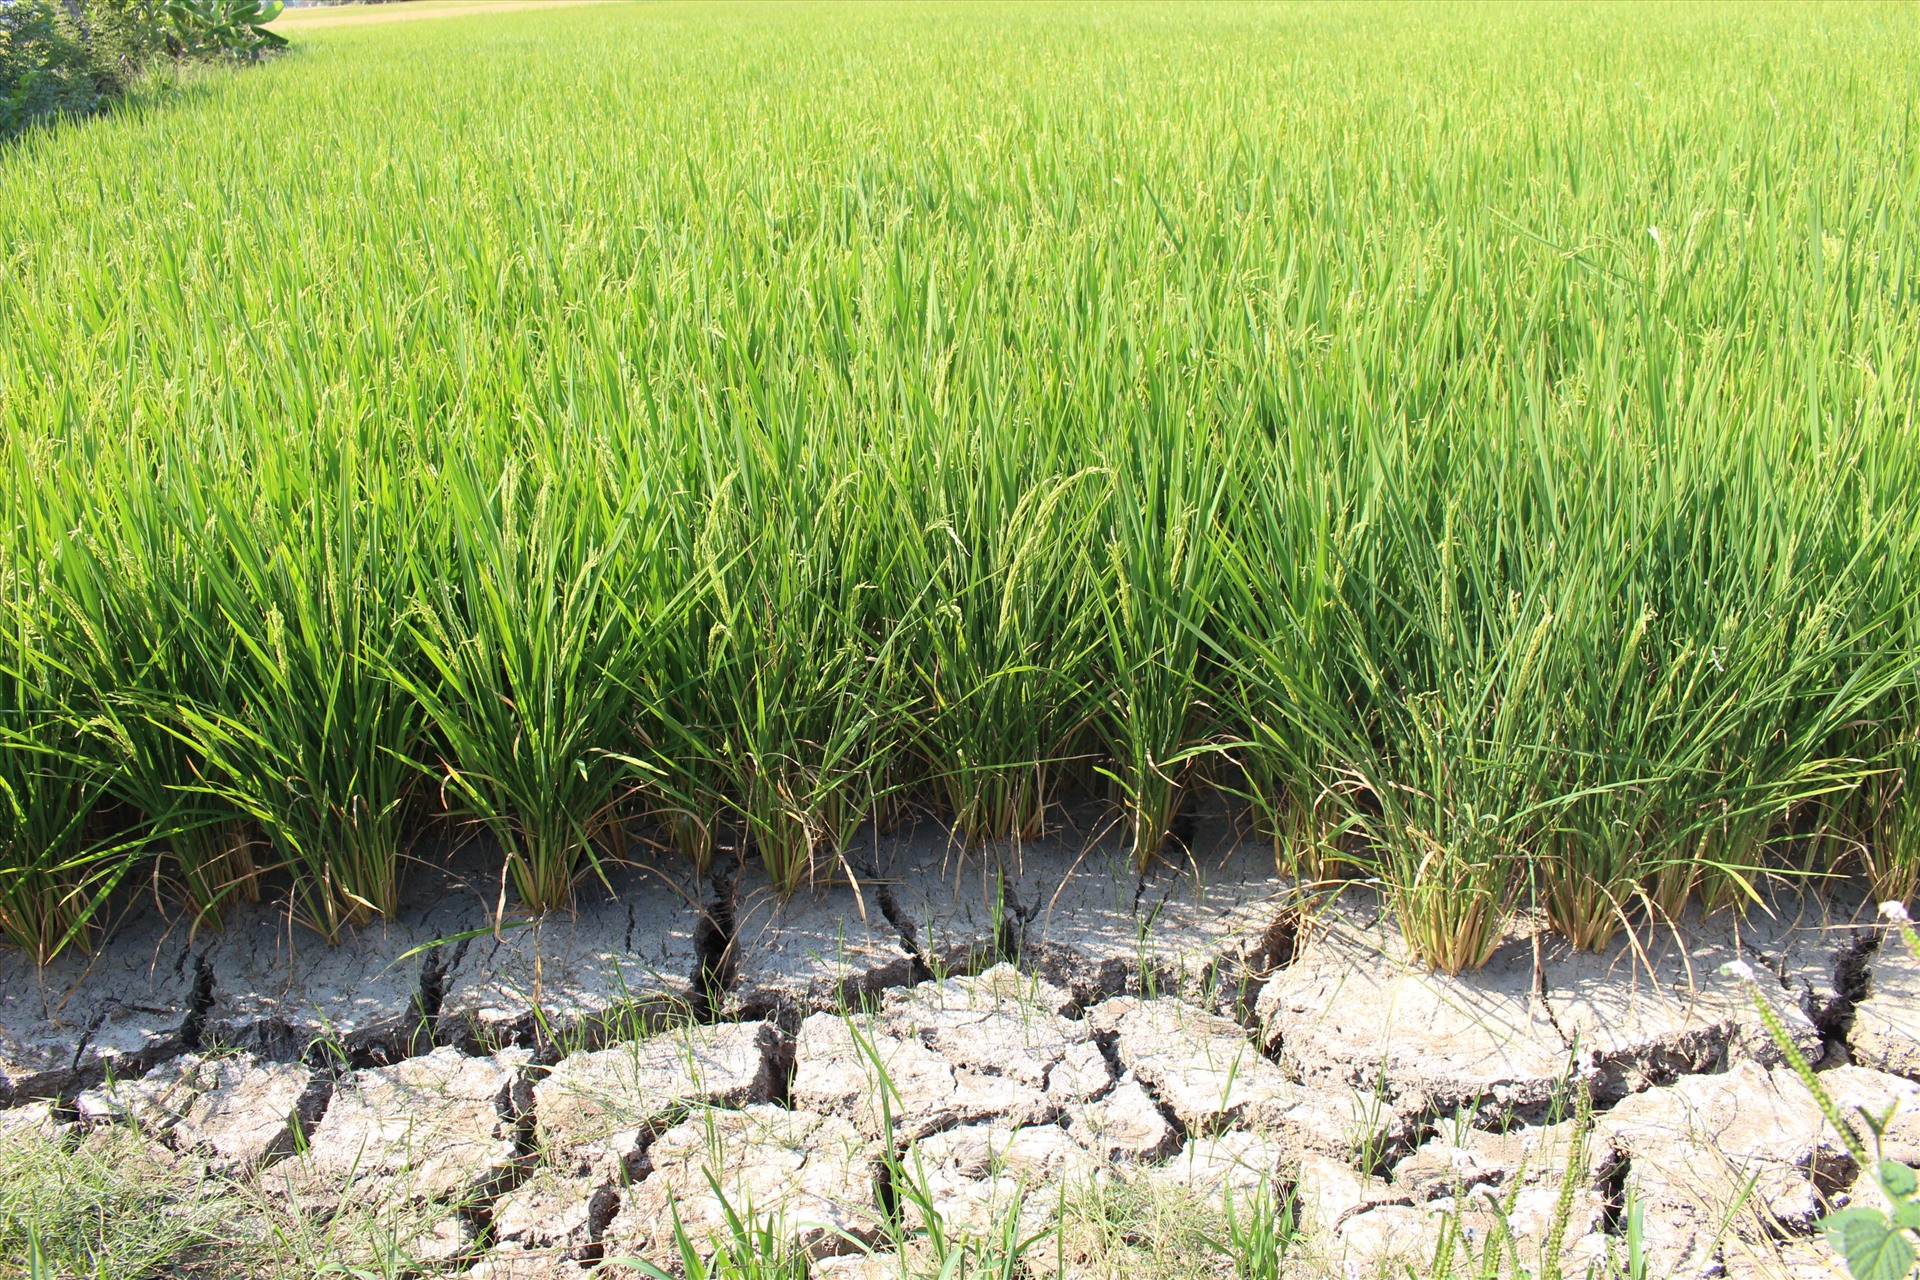 Theo Phòng NNPTNT huyện Tân Trụ, vụ lúa đông xuân này toàn huyện gieo sạ gần 4.600ha, hiện lúa đang giai đoạn chín chuẩn bị thu hoạch là hơn 900ha. Tuy nhiên, các ruộng lúa có nguy cơ mất trăng do chưa kịp làm đòng đã cạn khô nước.